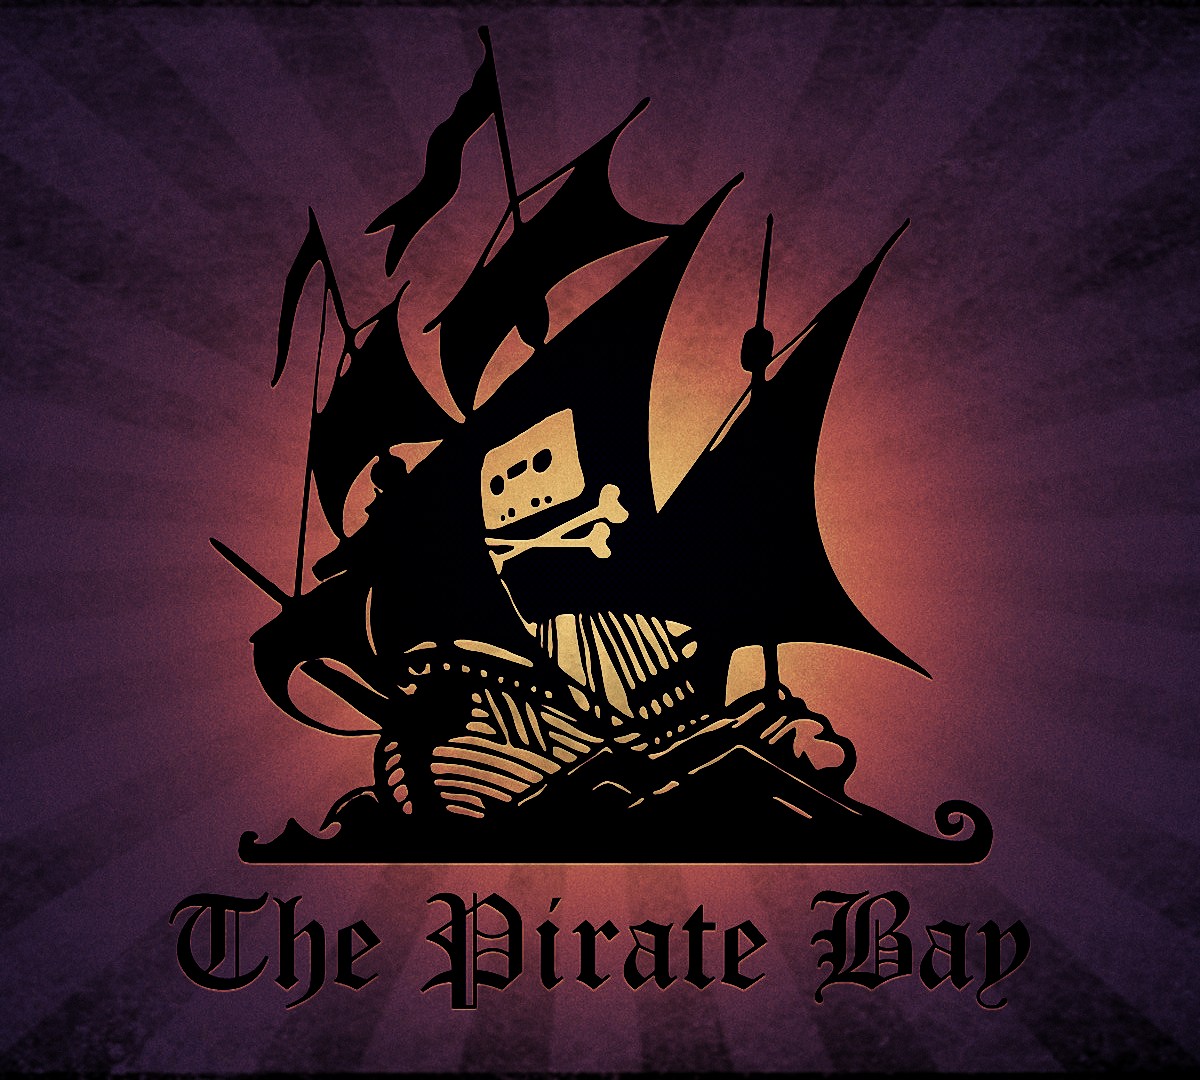 História do The Pirate Bay vai virar série de TV e quem sabe até filme -  Canaltech